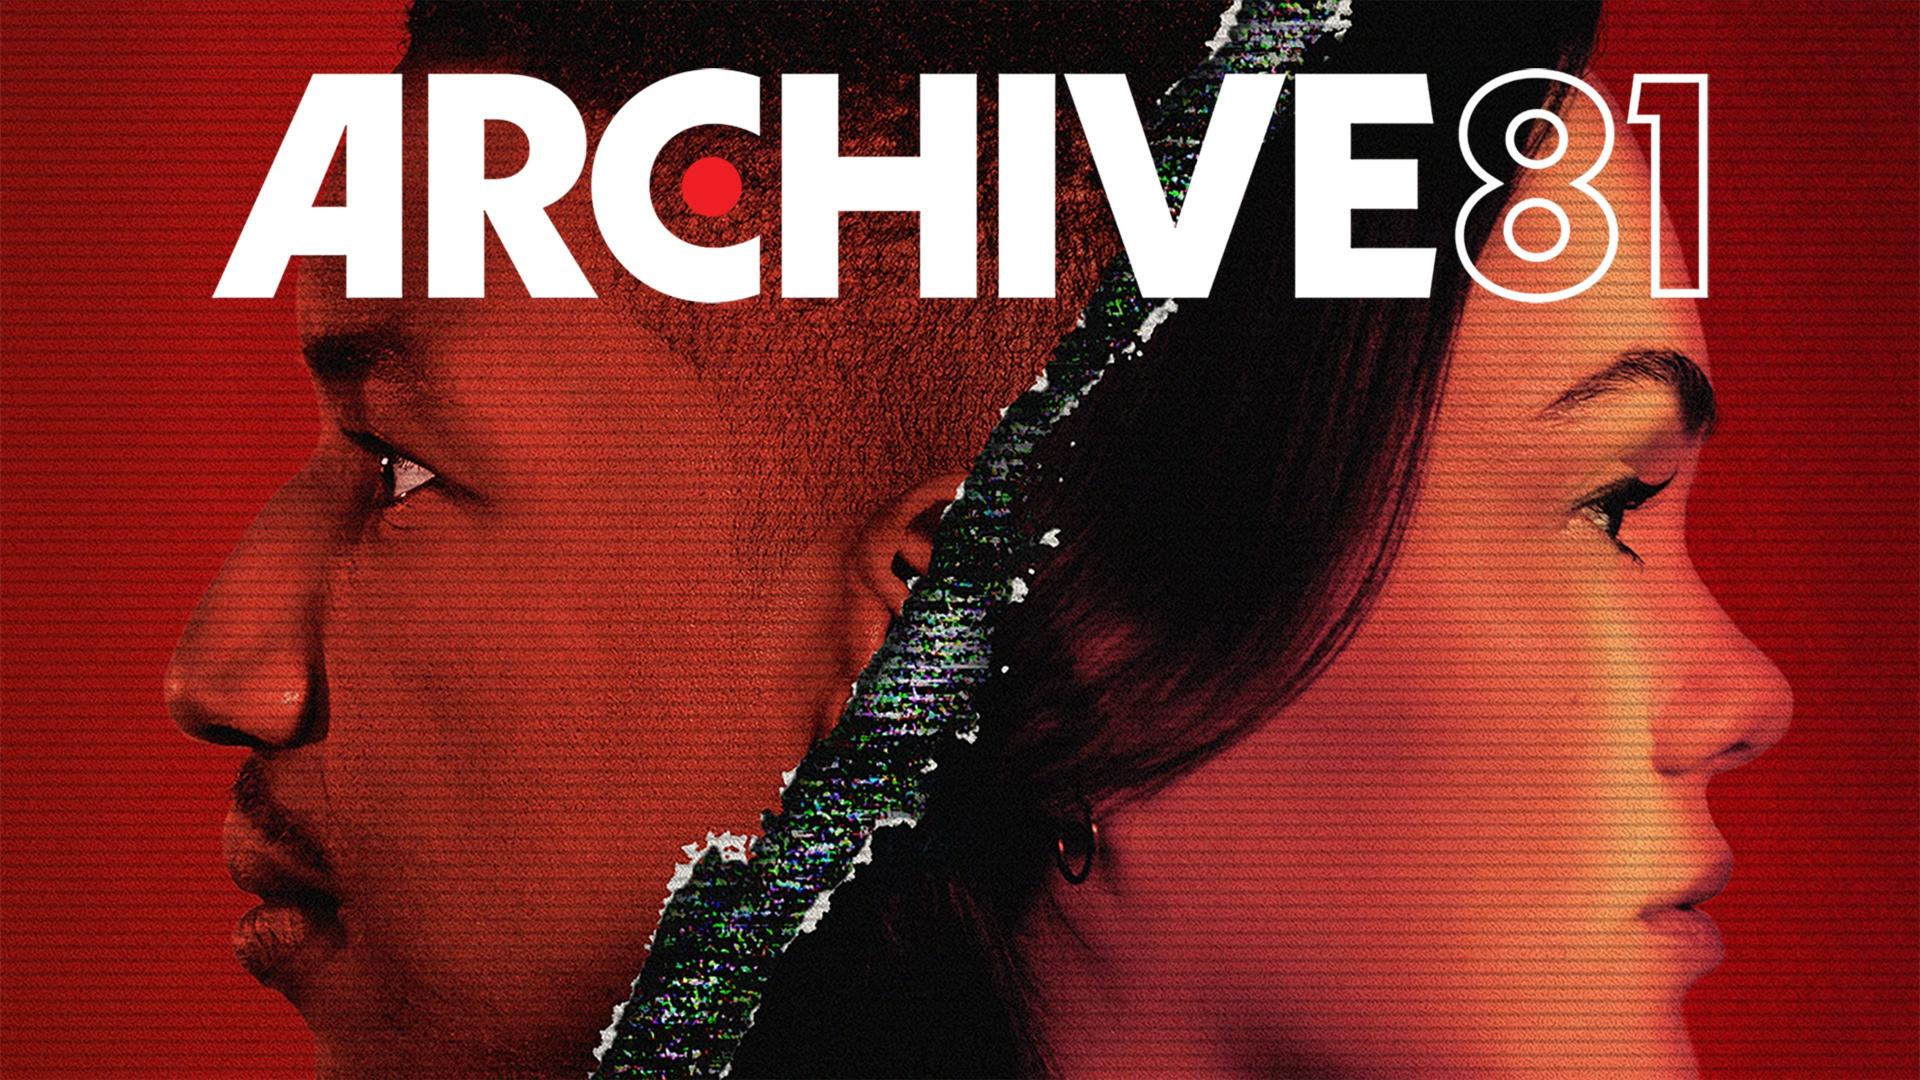 Archive 81 / 81-es számú archívum (2022)